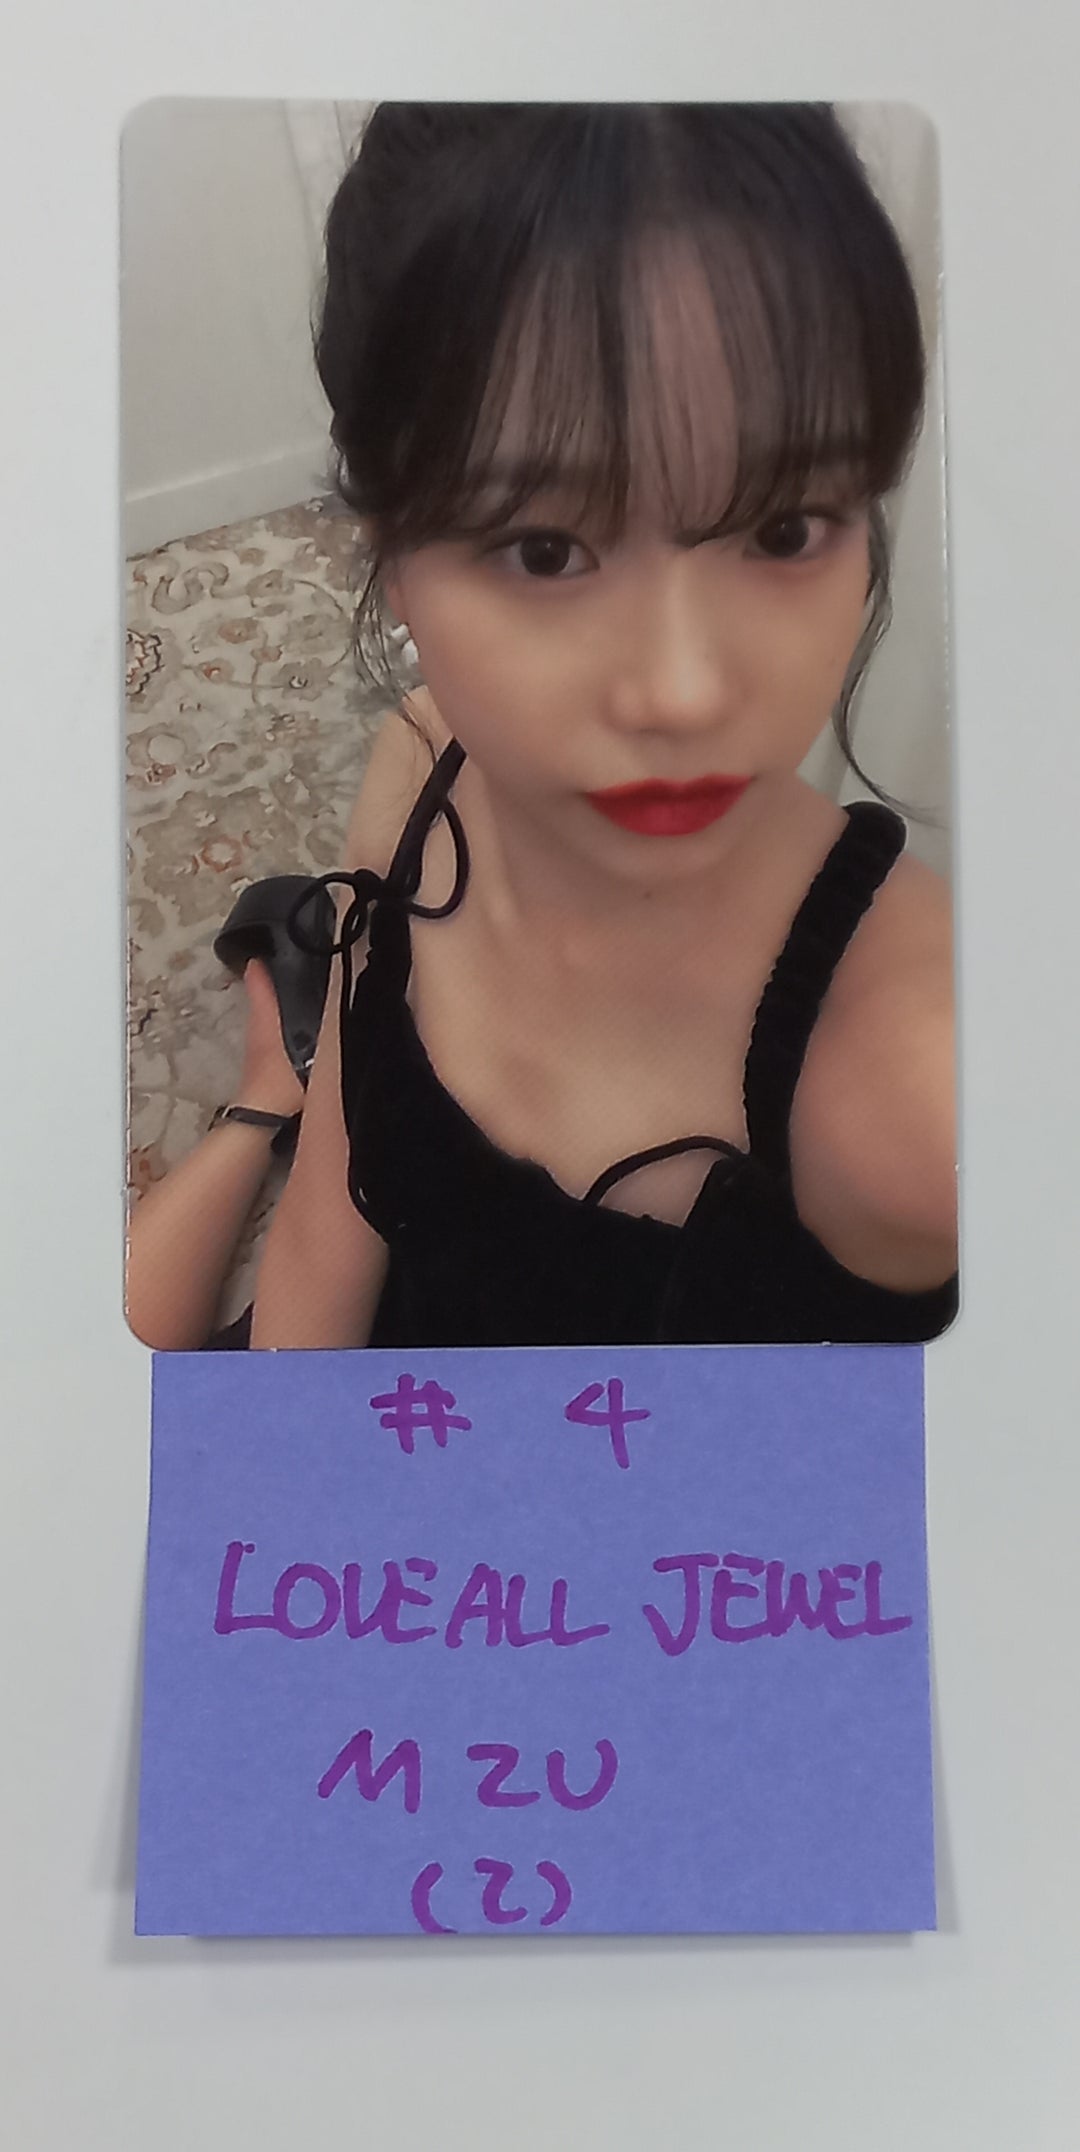 チョ・ユリ「Love All」 - [Music Korea, M2U, Soundwave] ファンサインイベントフォトカード [JEWEL Ver.] [23.08.21]